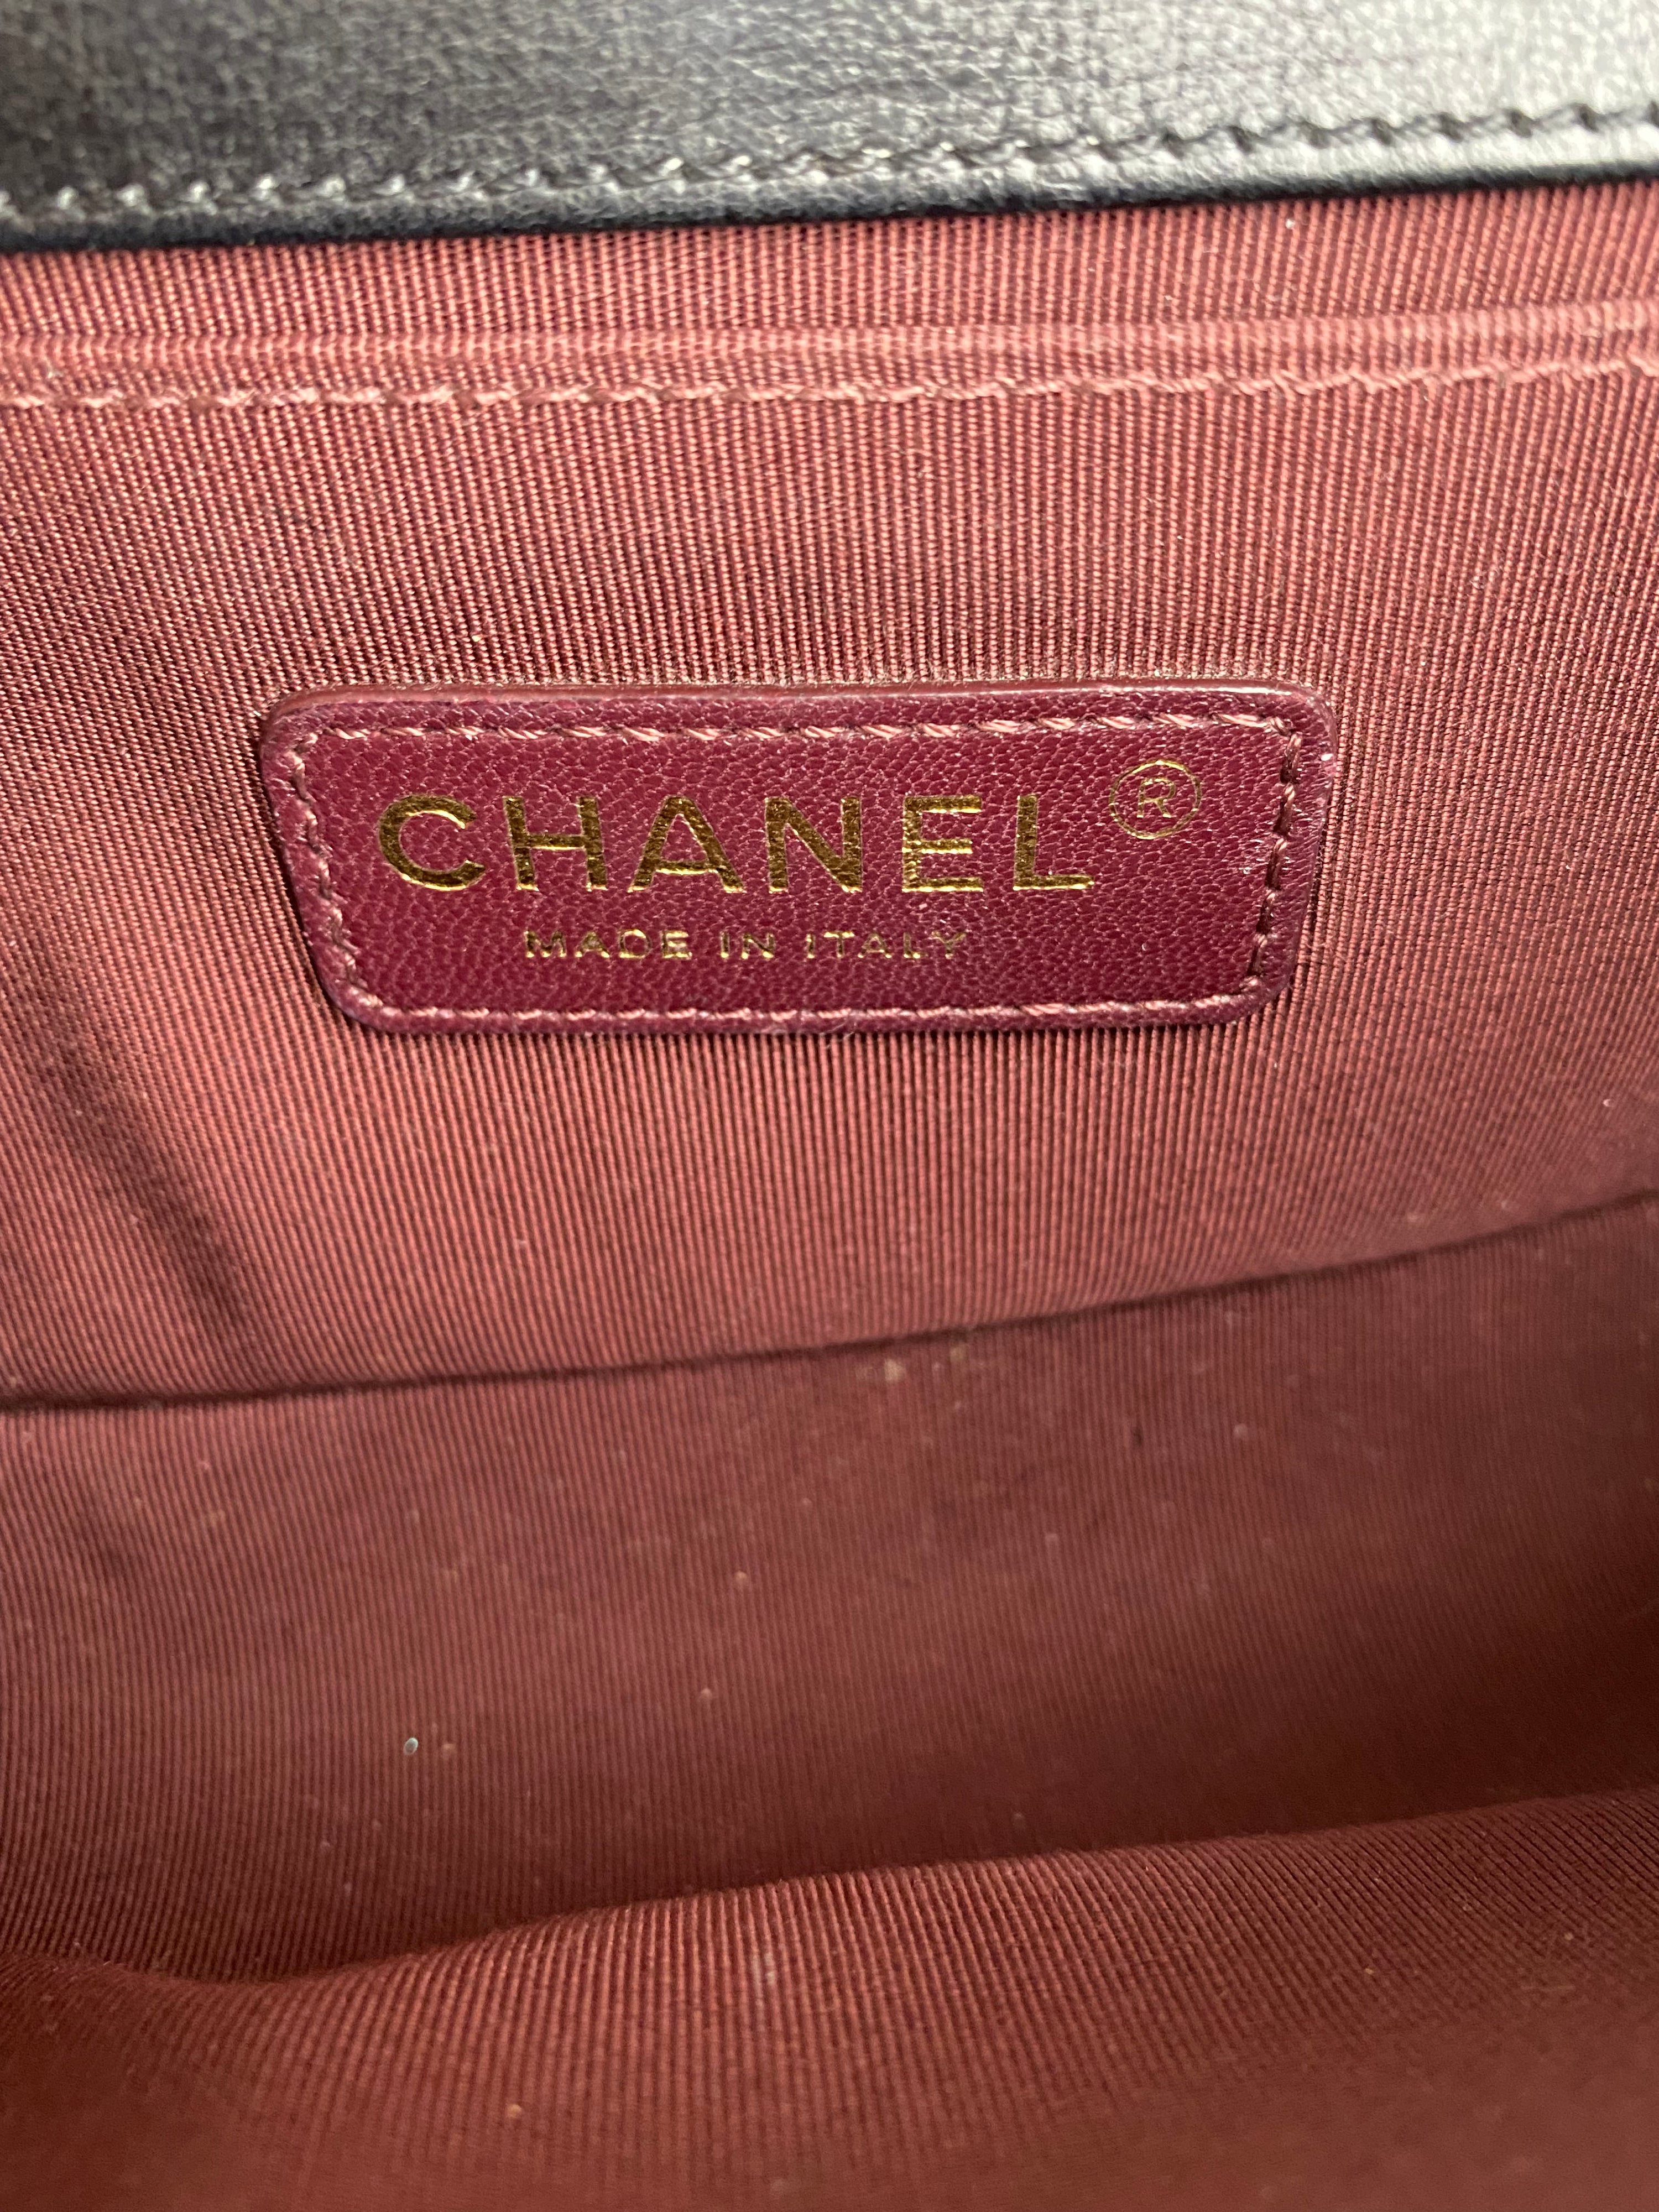 Chanel Black Ponyhair Small Square Boy Bag